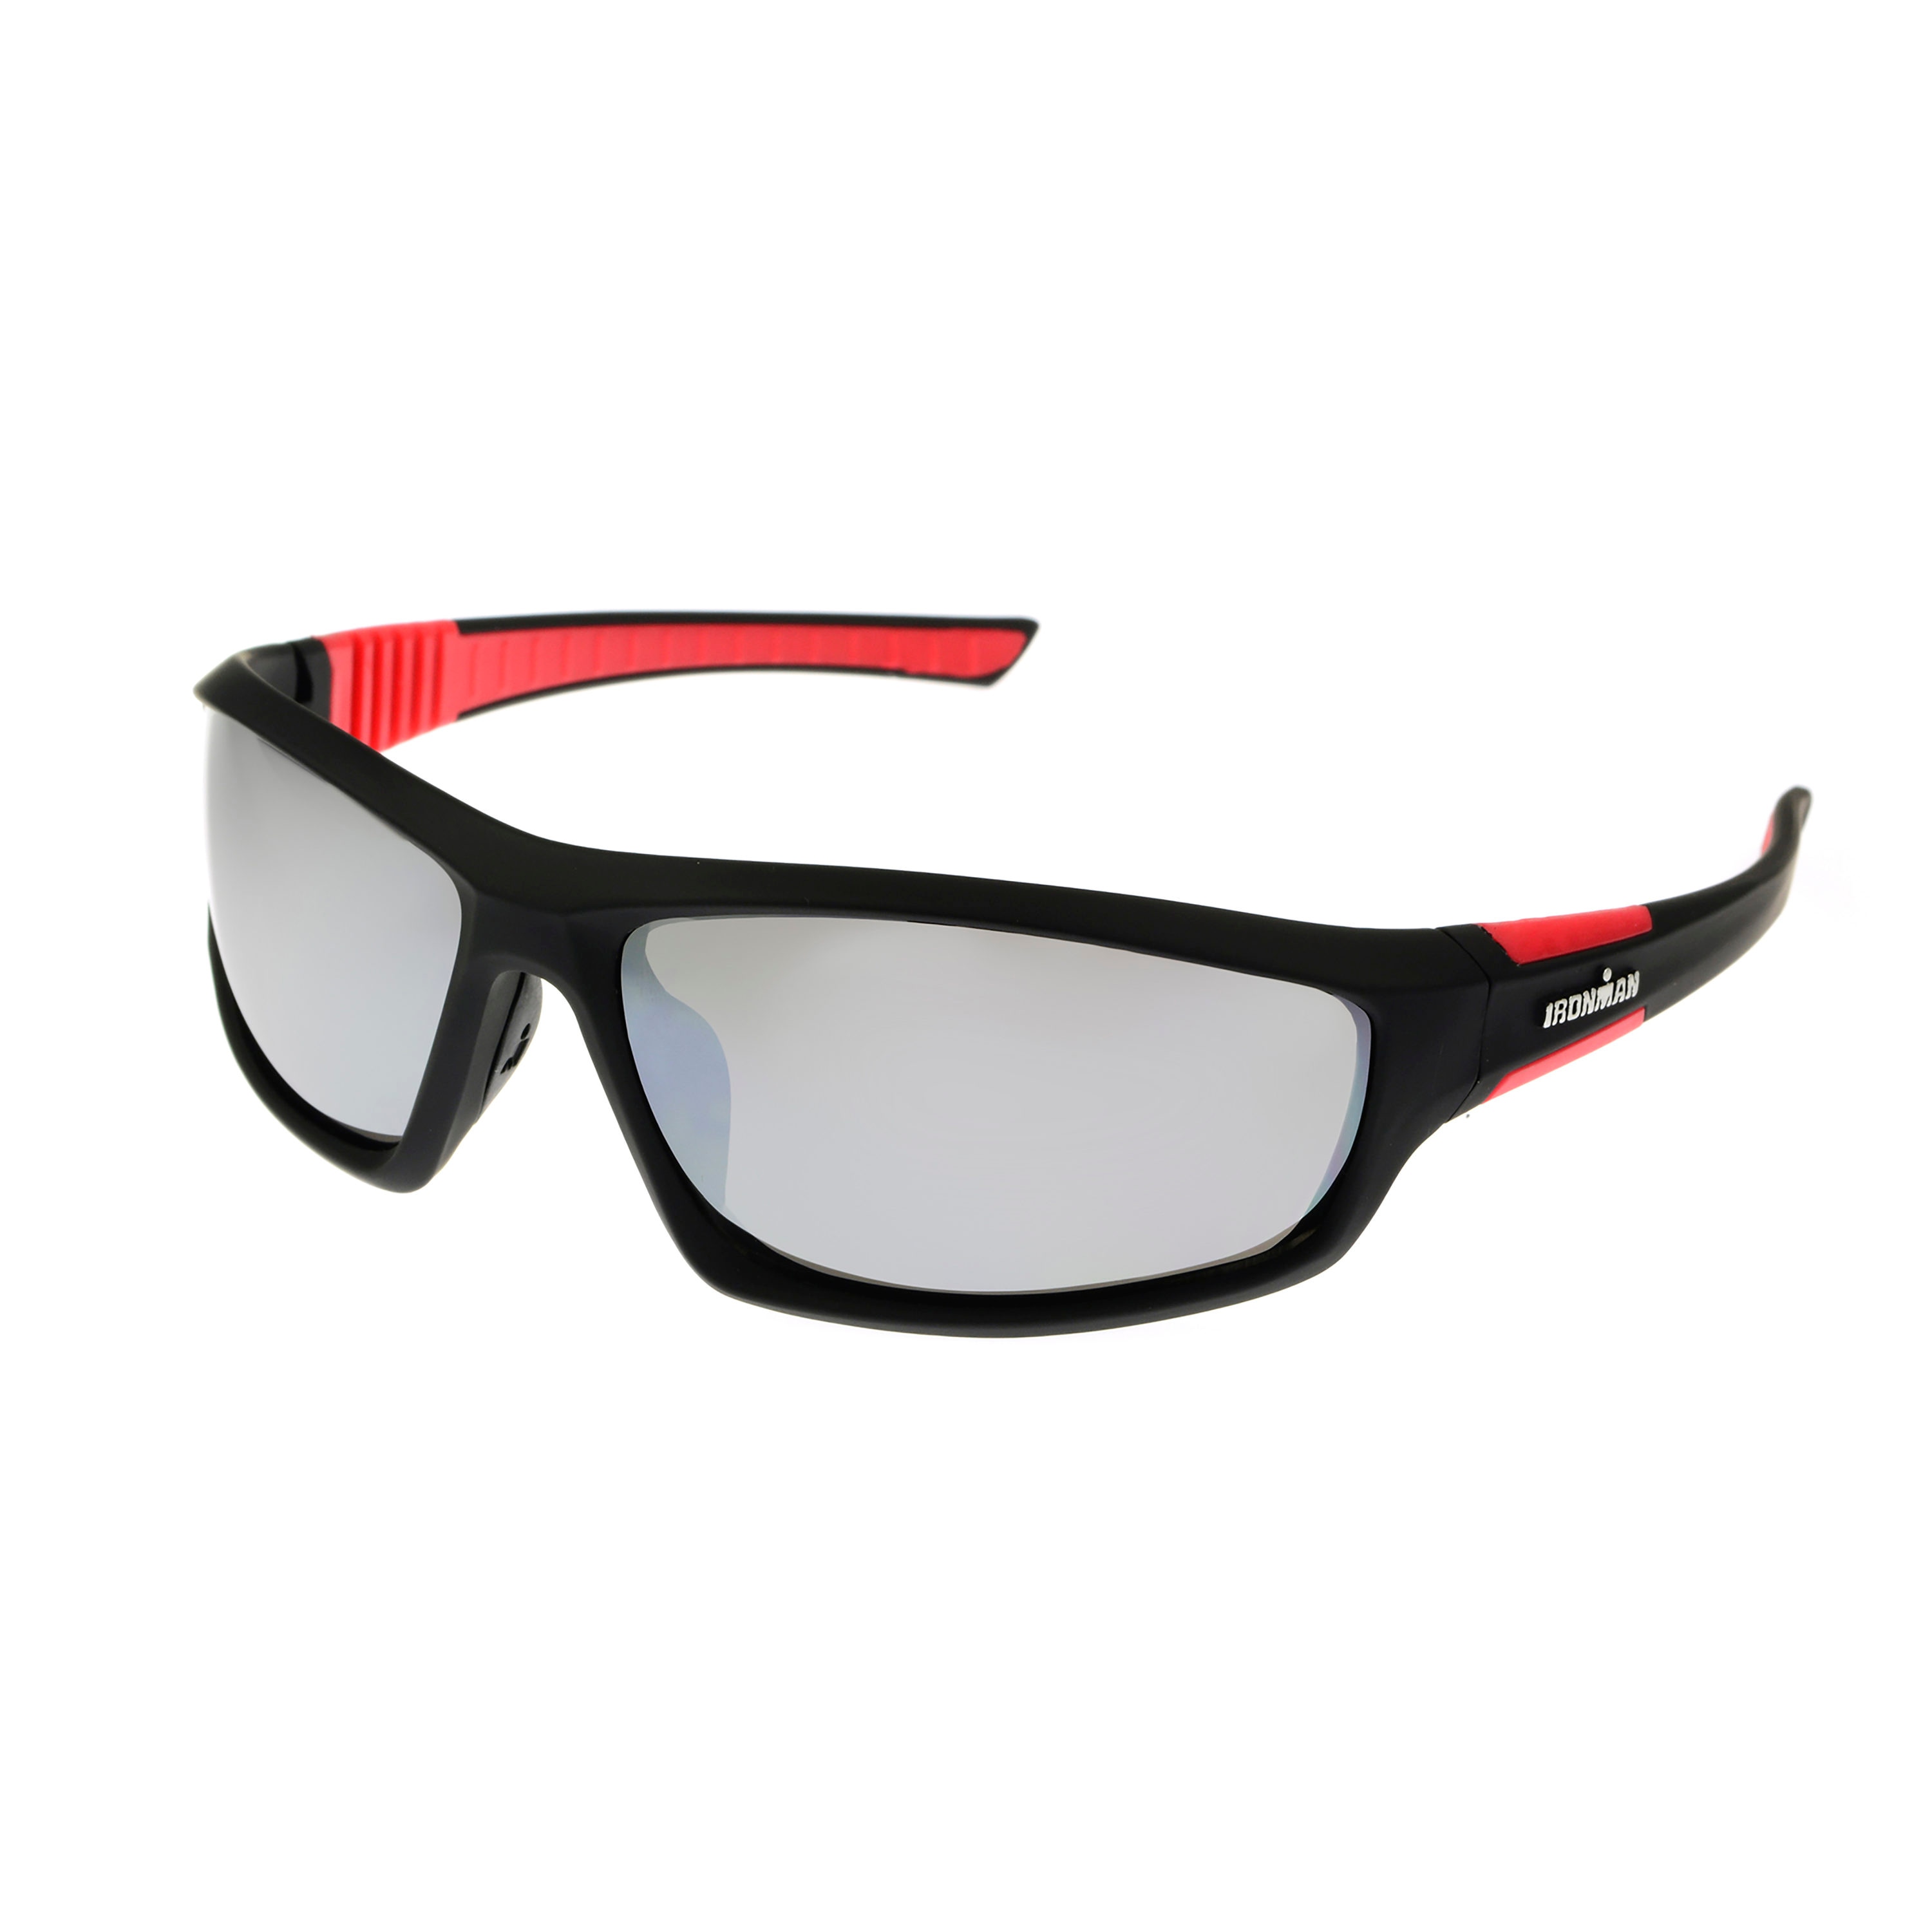 Foster Grant Ironman Dextro Mens Black Rubberized Plastic Sunglasses at